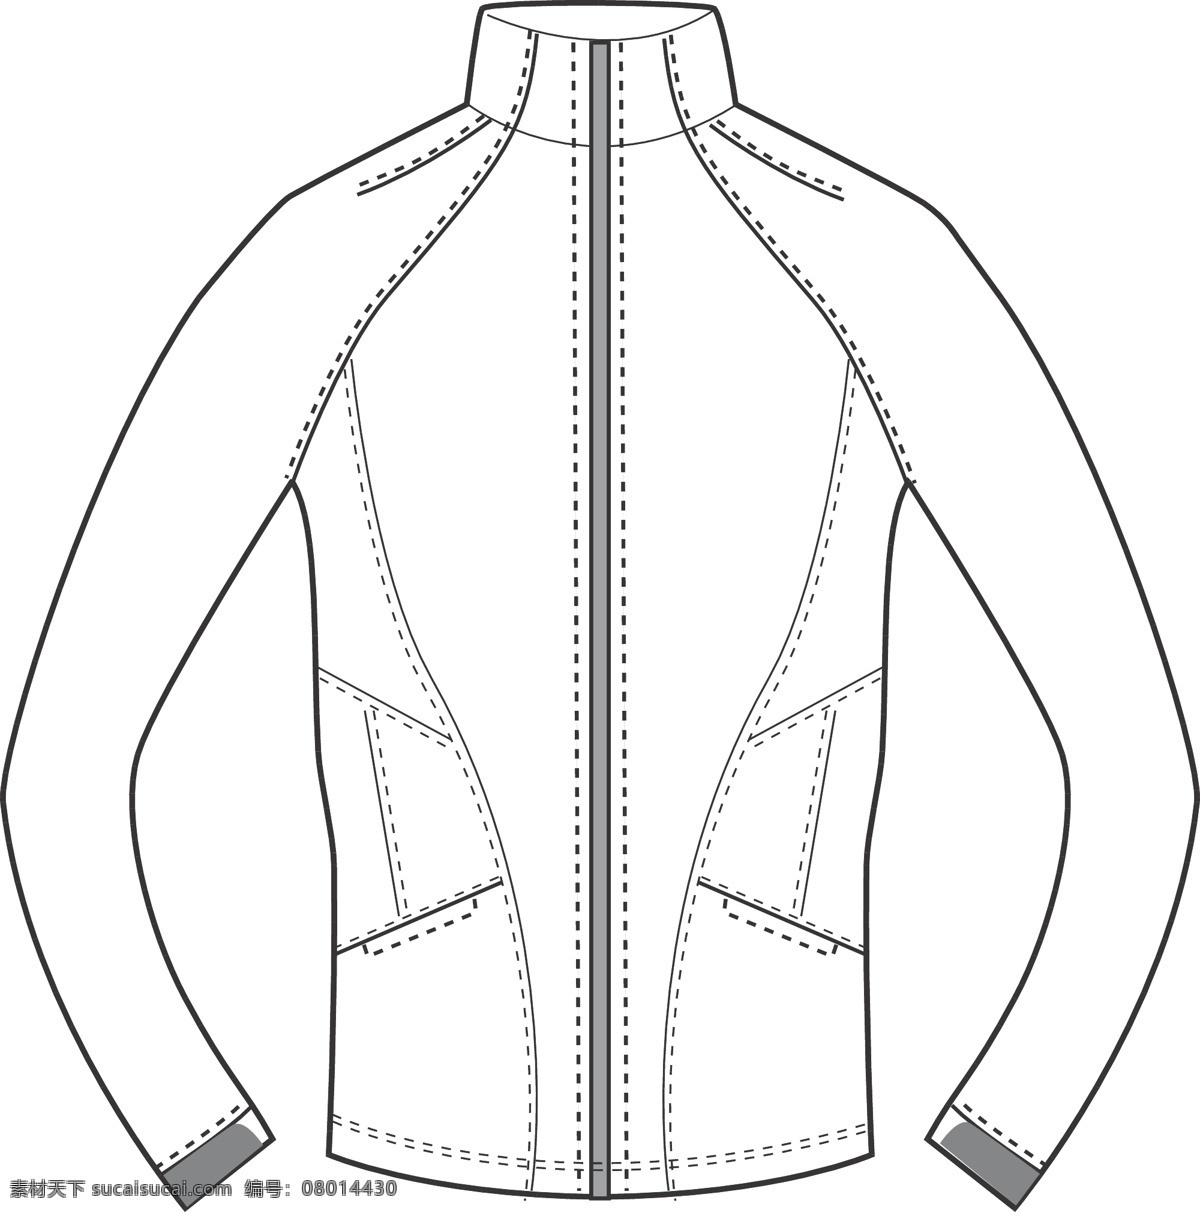 服装 模板 服装模板 服装设计 衣服 衣服模板 矢量 模板下载 其他服装素材